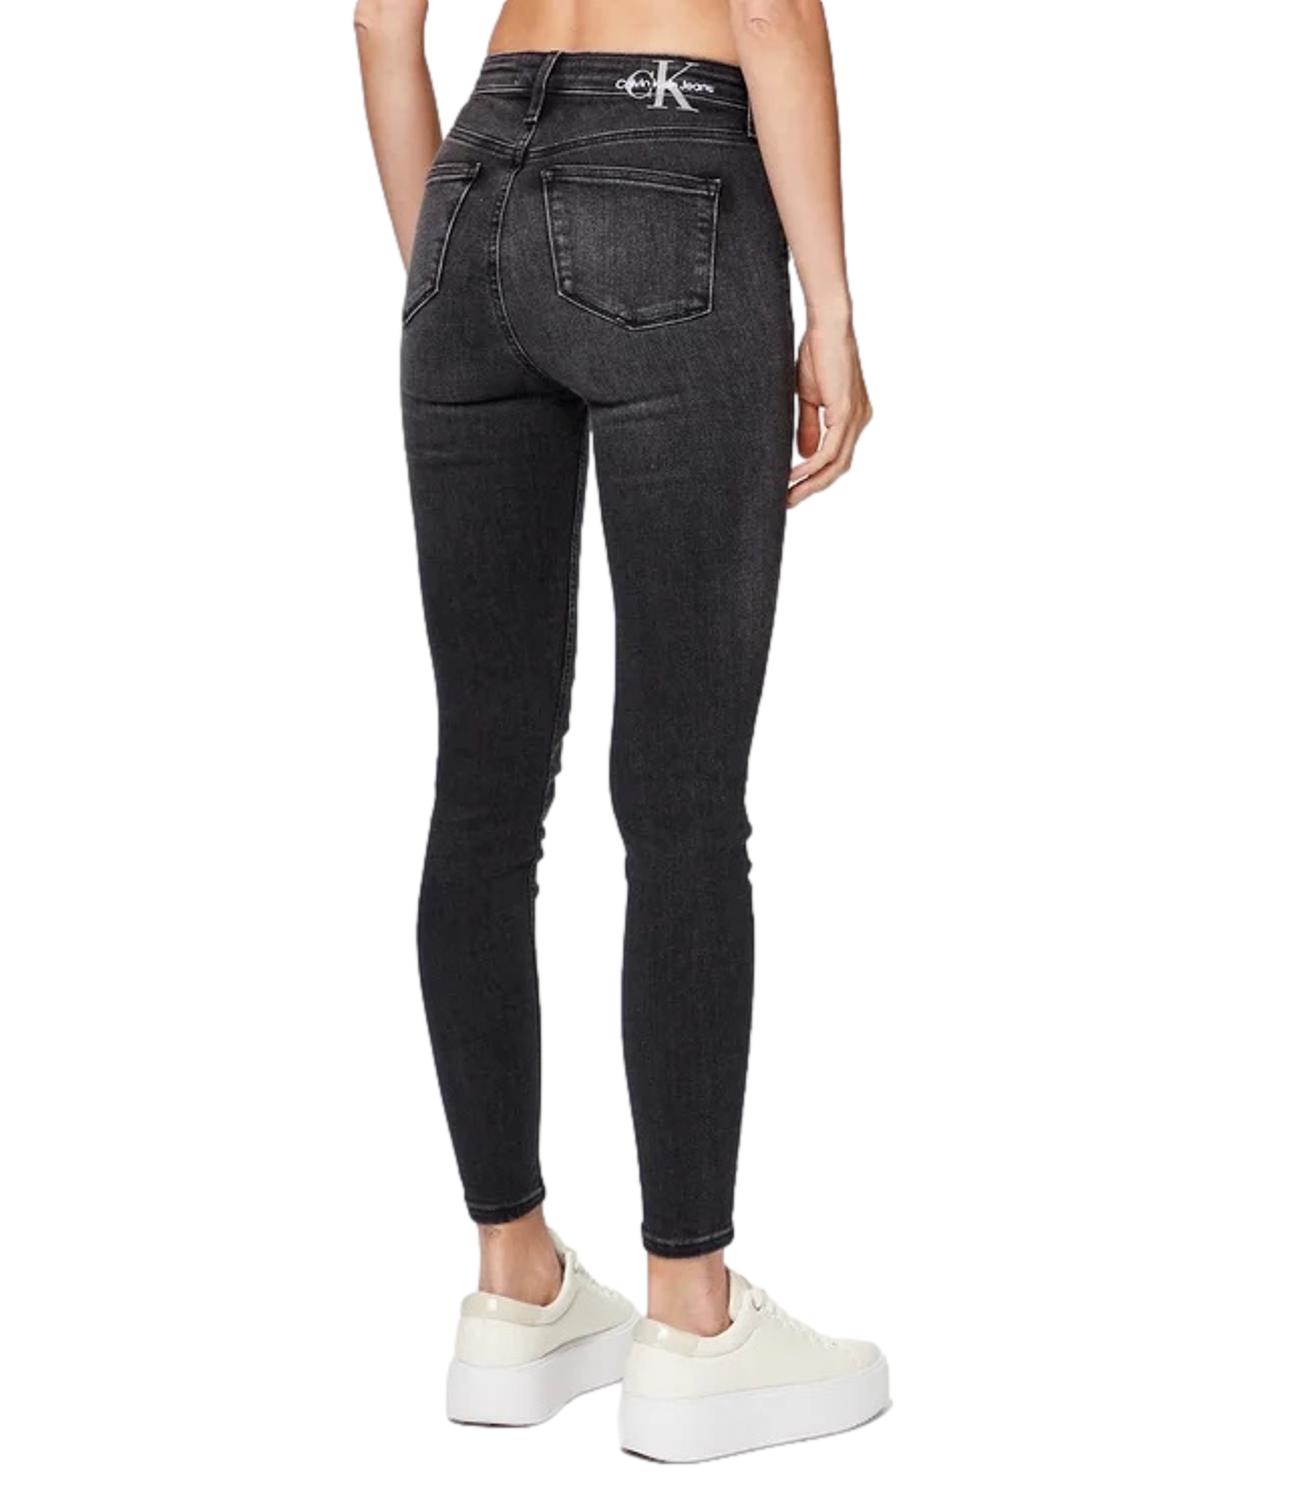 Skinny fit black denim jeans with black ck logo on the back